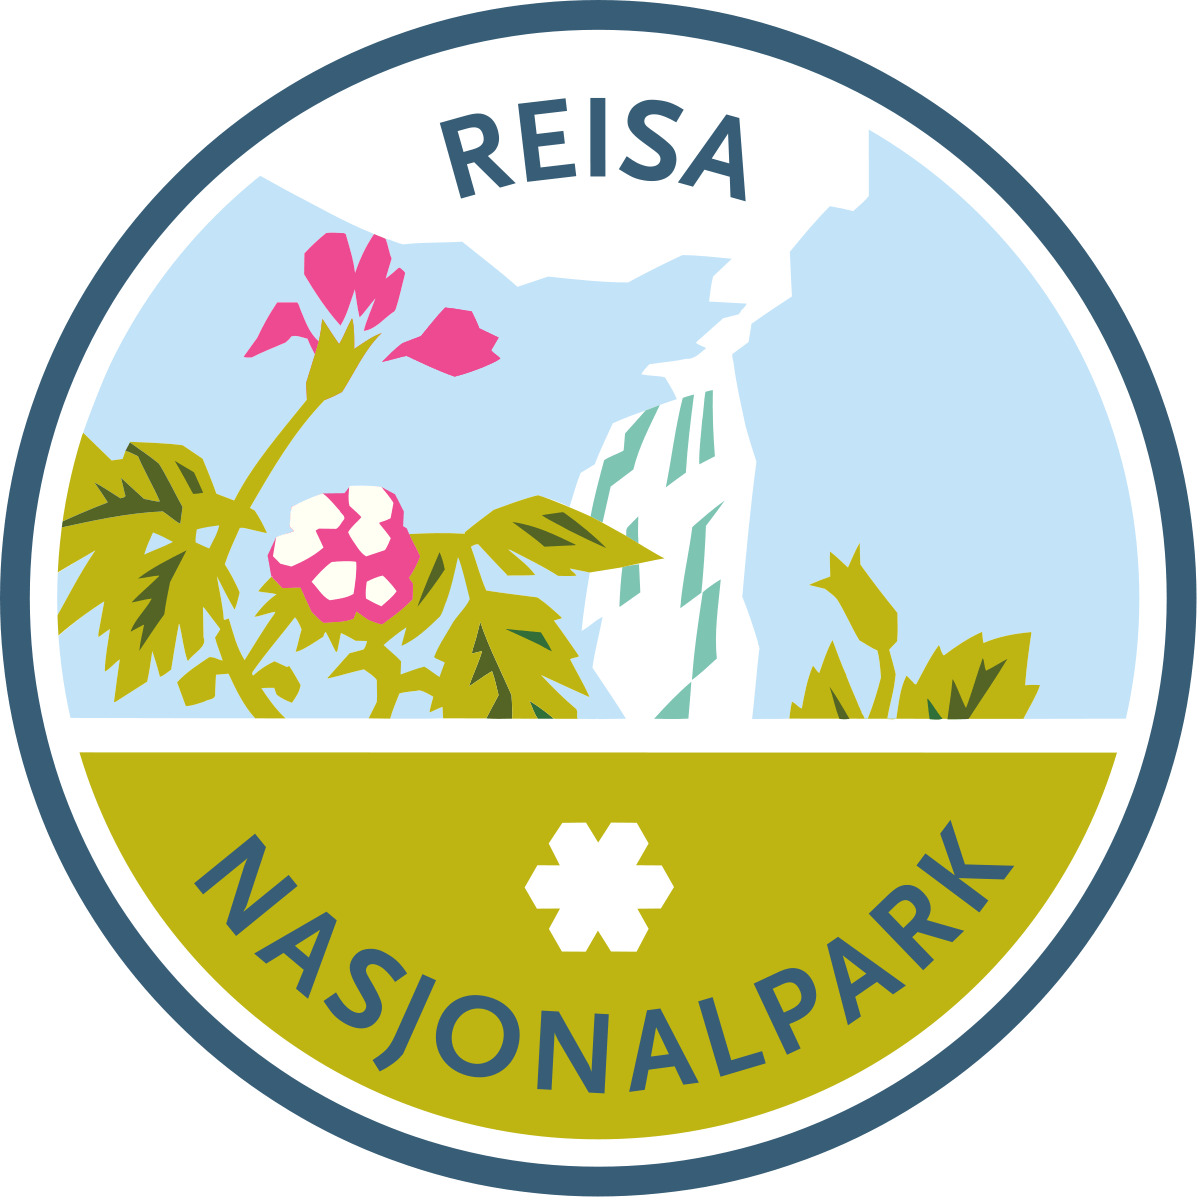 Reisa Nasjonalpark png icons